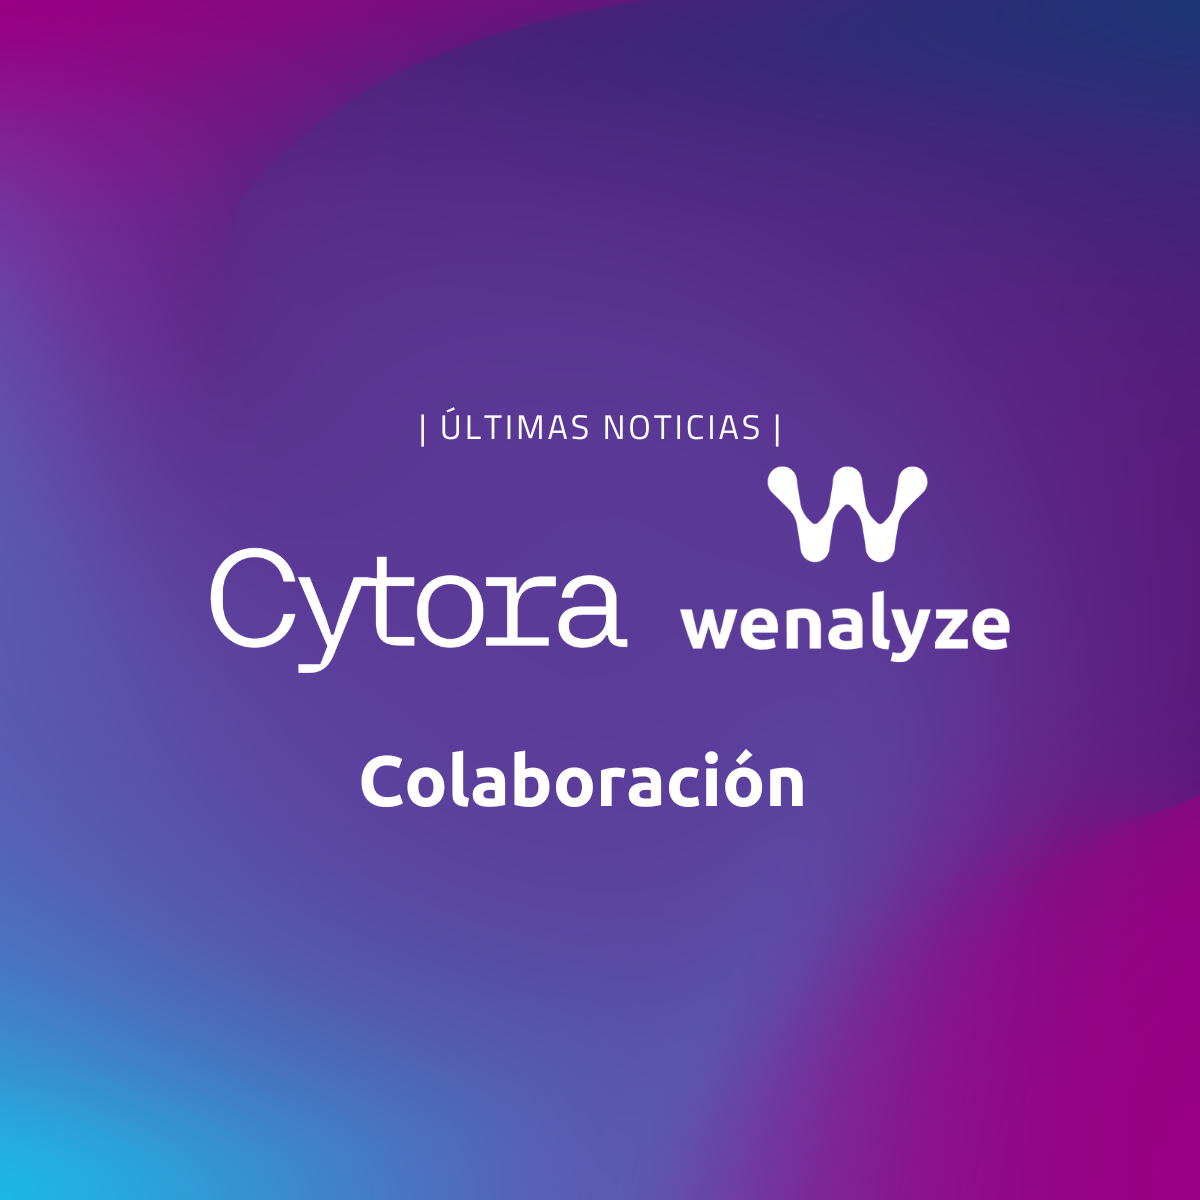 Colaboración Wenalyze con Cytora para mejorar la calidad del dato y la selección de riesgo